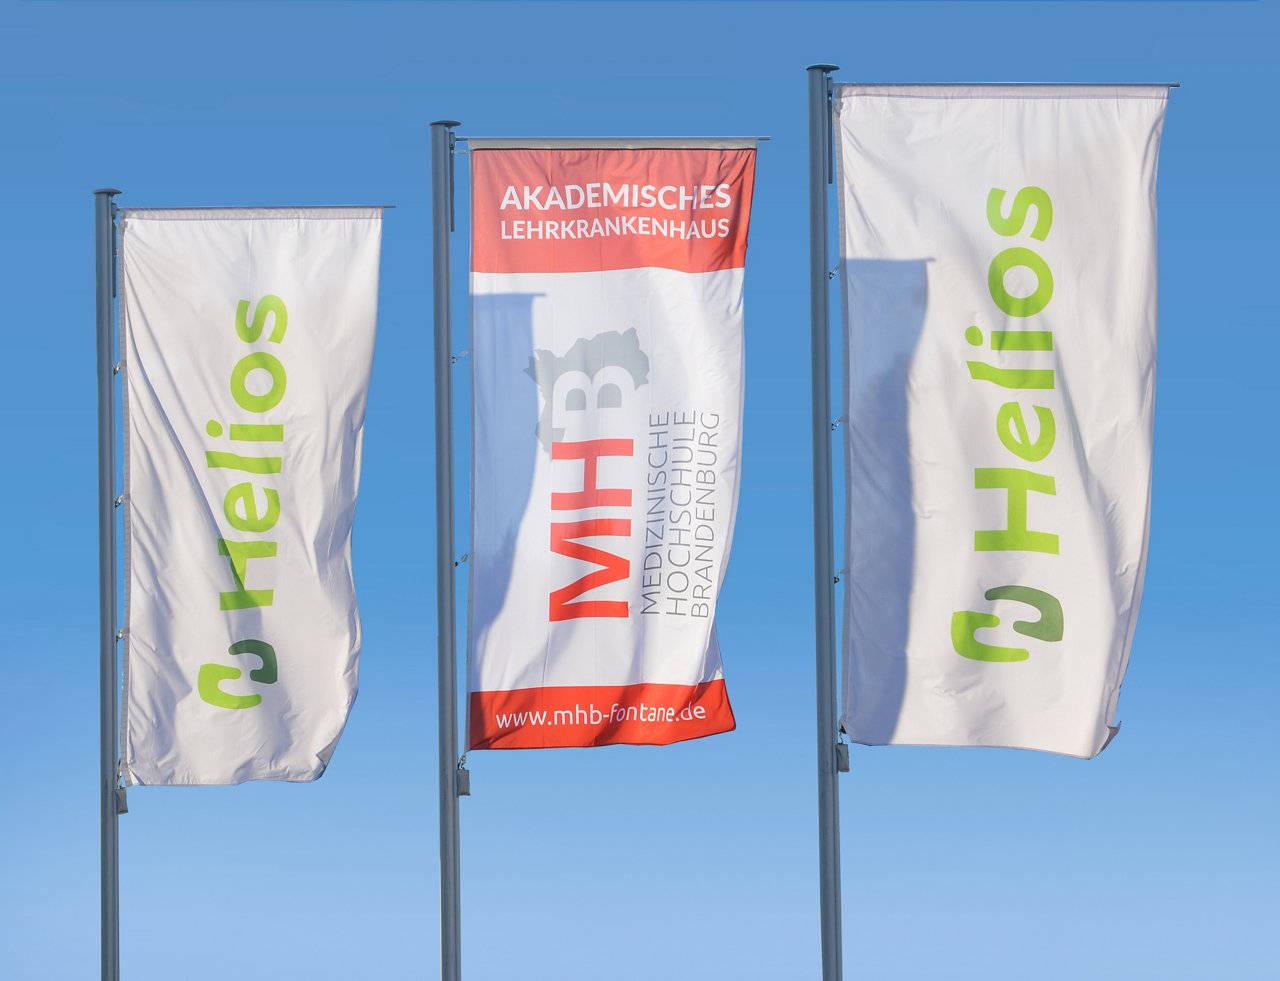 Flaggen mit dem Logo der Helios Kliniken und des Akademisches Lehrkrankenhaus der Medizinischen Hochschule Brandenburg Theodor Fontane (MHB)